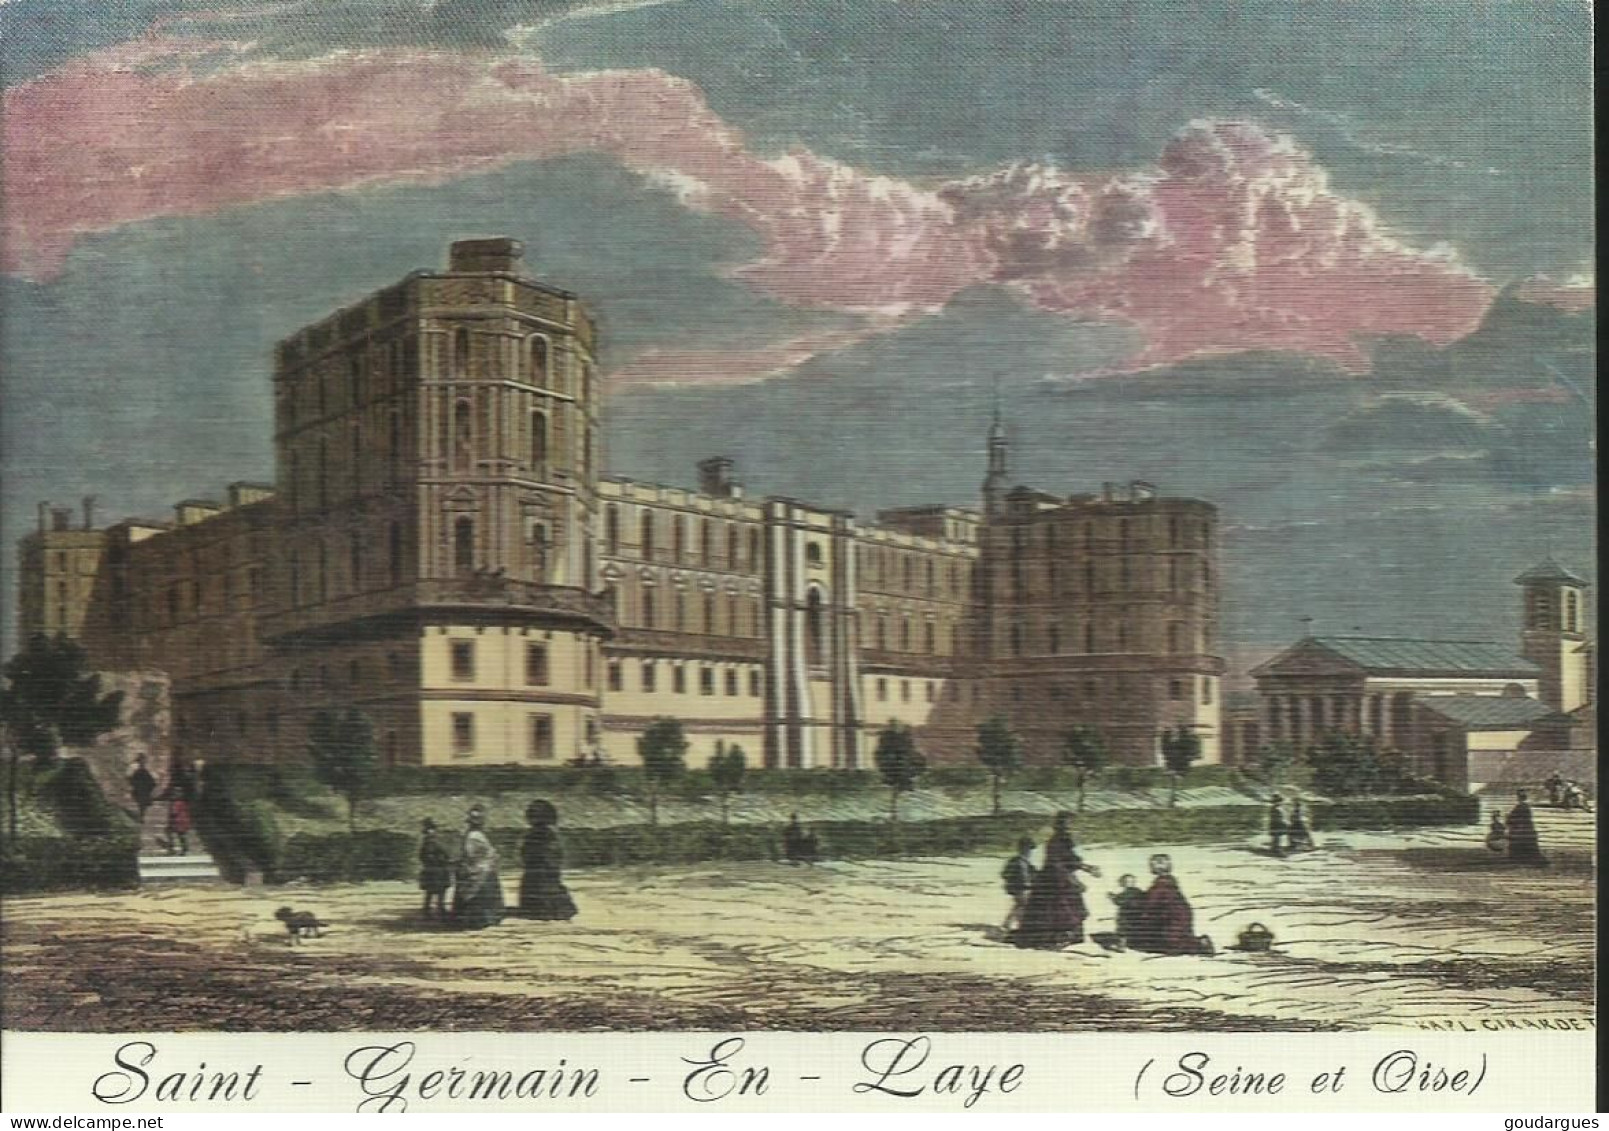 Saint-Germain-en-Laye - Au Temps Jadis - Le Château - (P) - St. Germain En Laye (Schloß)